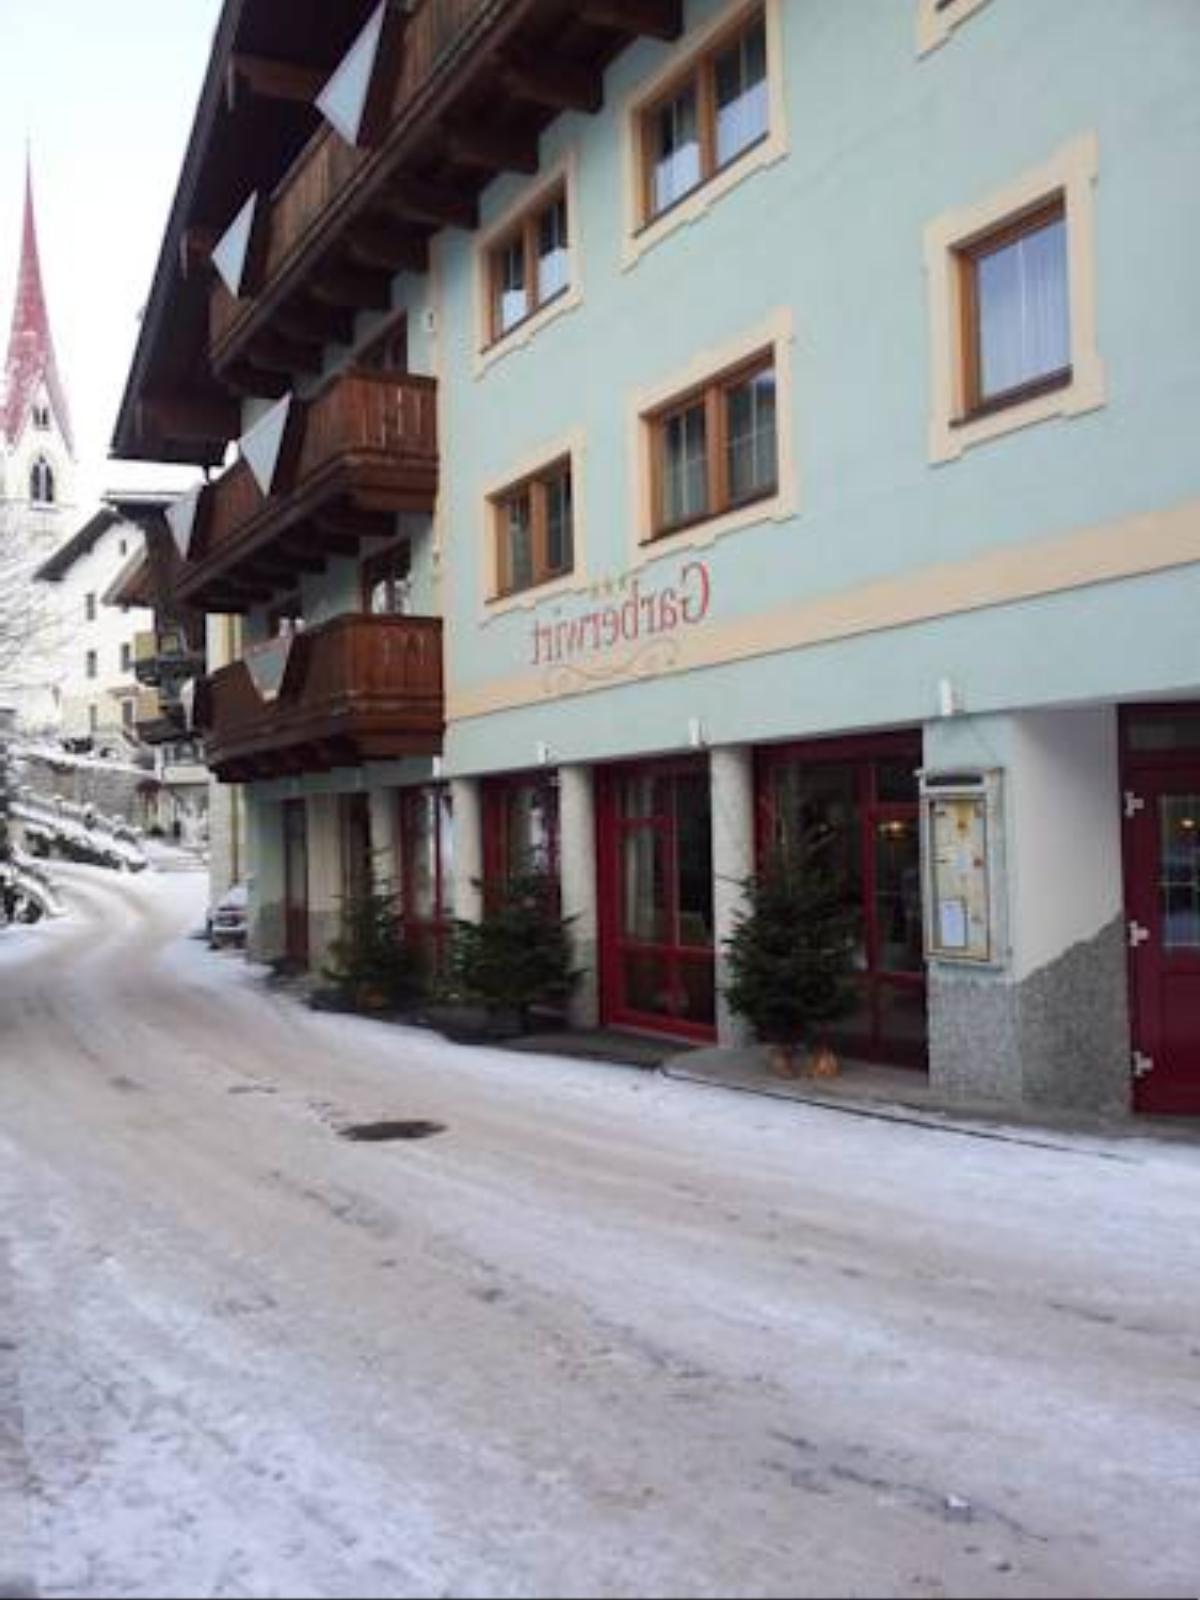 Hotel Garberwirt Hotel Hippach Austria